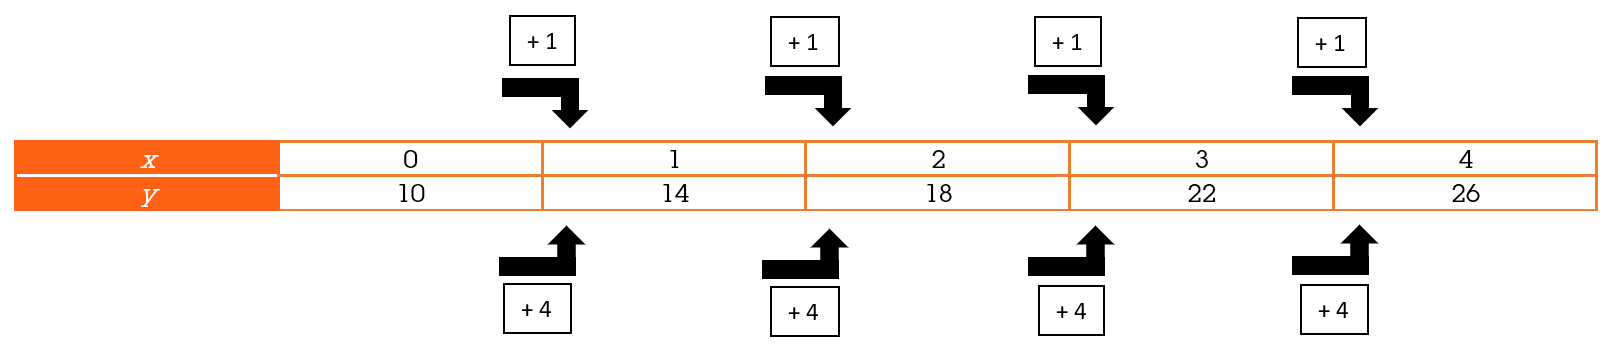 Tabel met een lineair verband